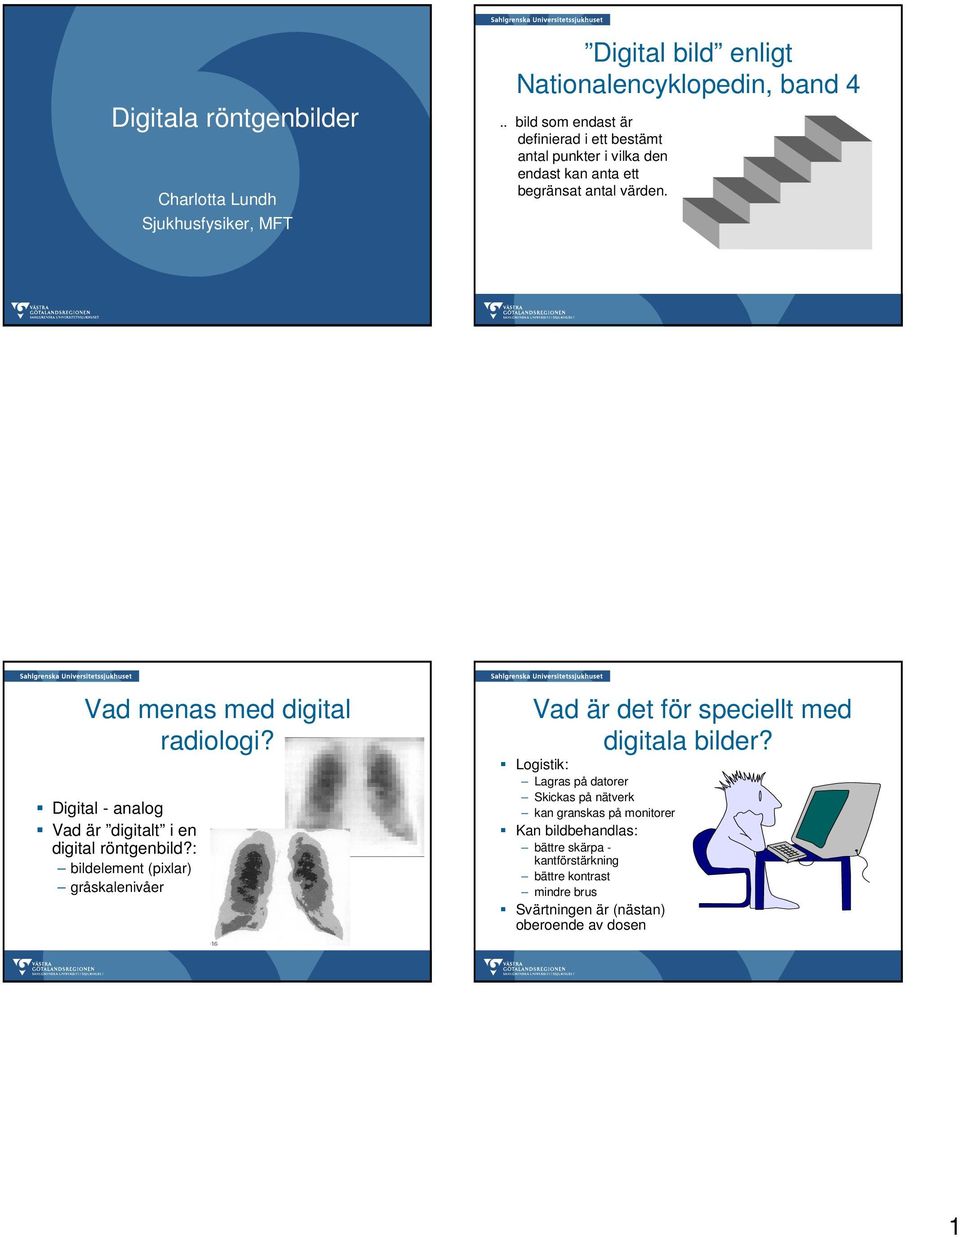 Digital - analog Vad är digitalt i en digital röntgenbild?: bildelement (pixlar) gråskalenivåer Vad är det för speciellt med digitala bilder?